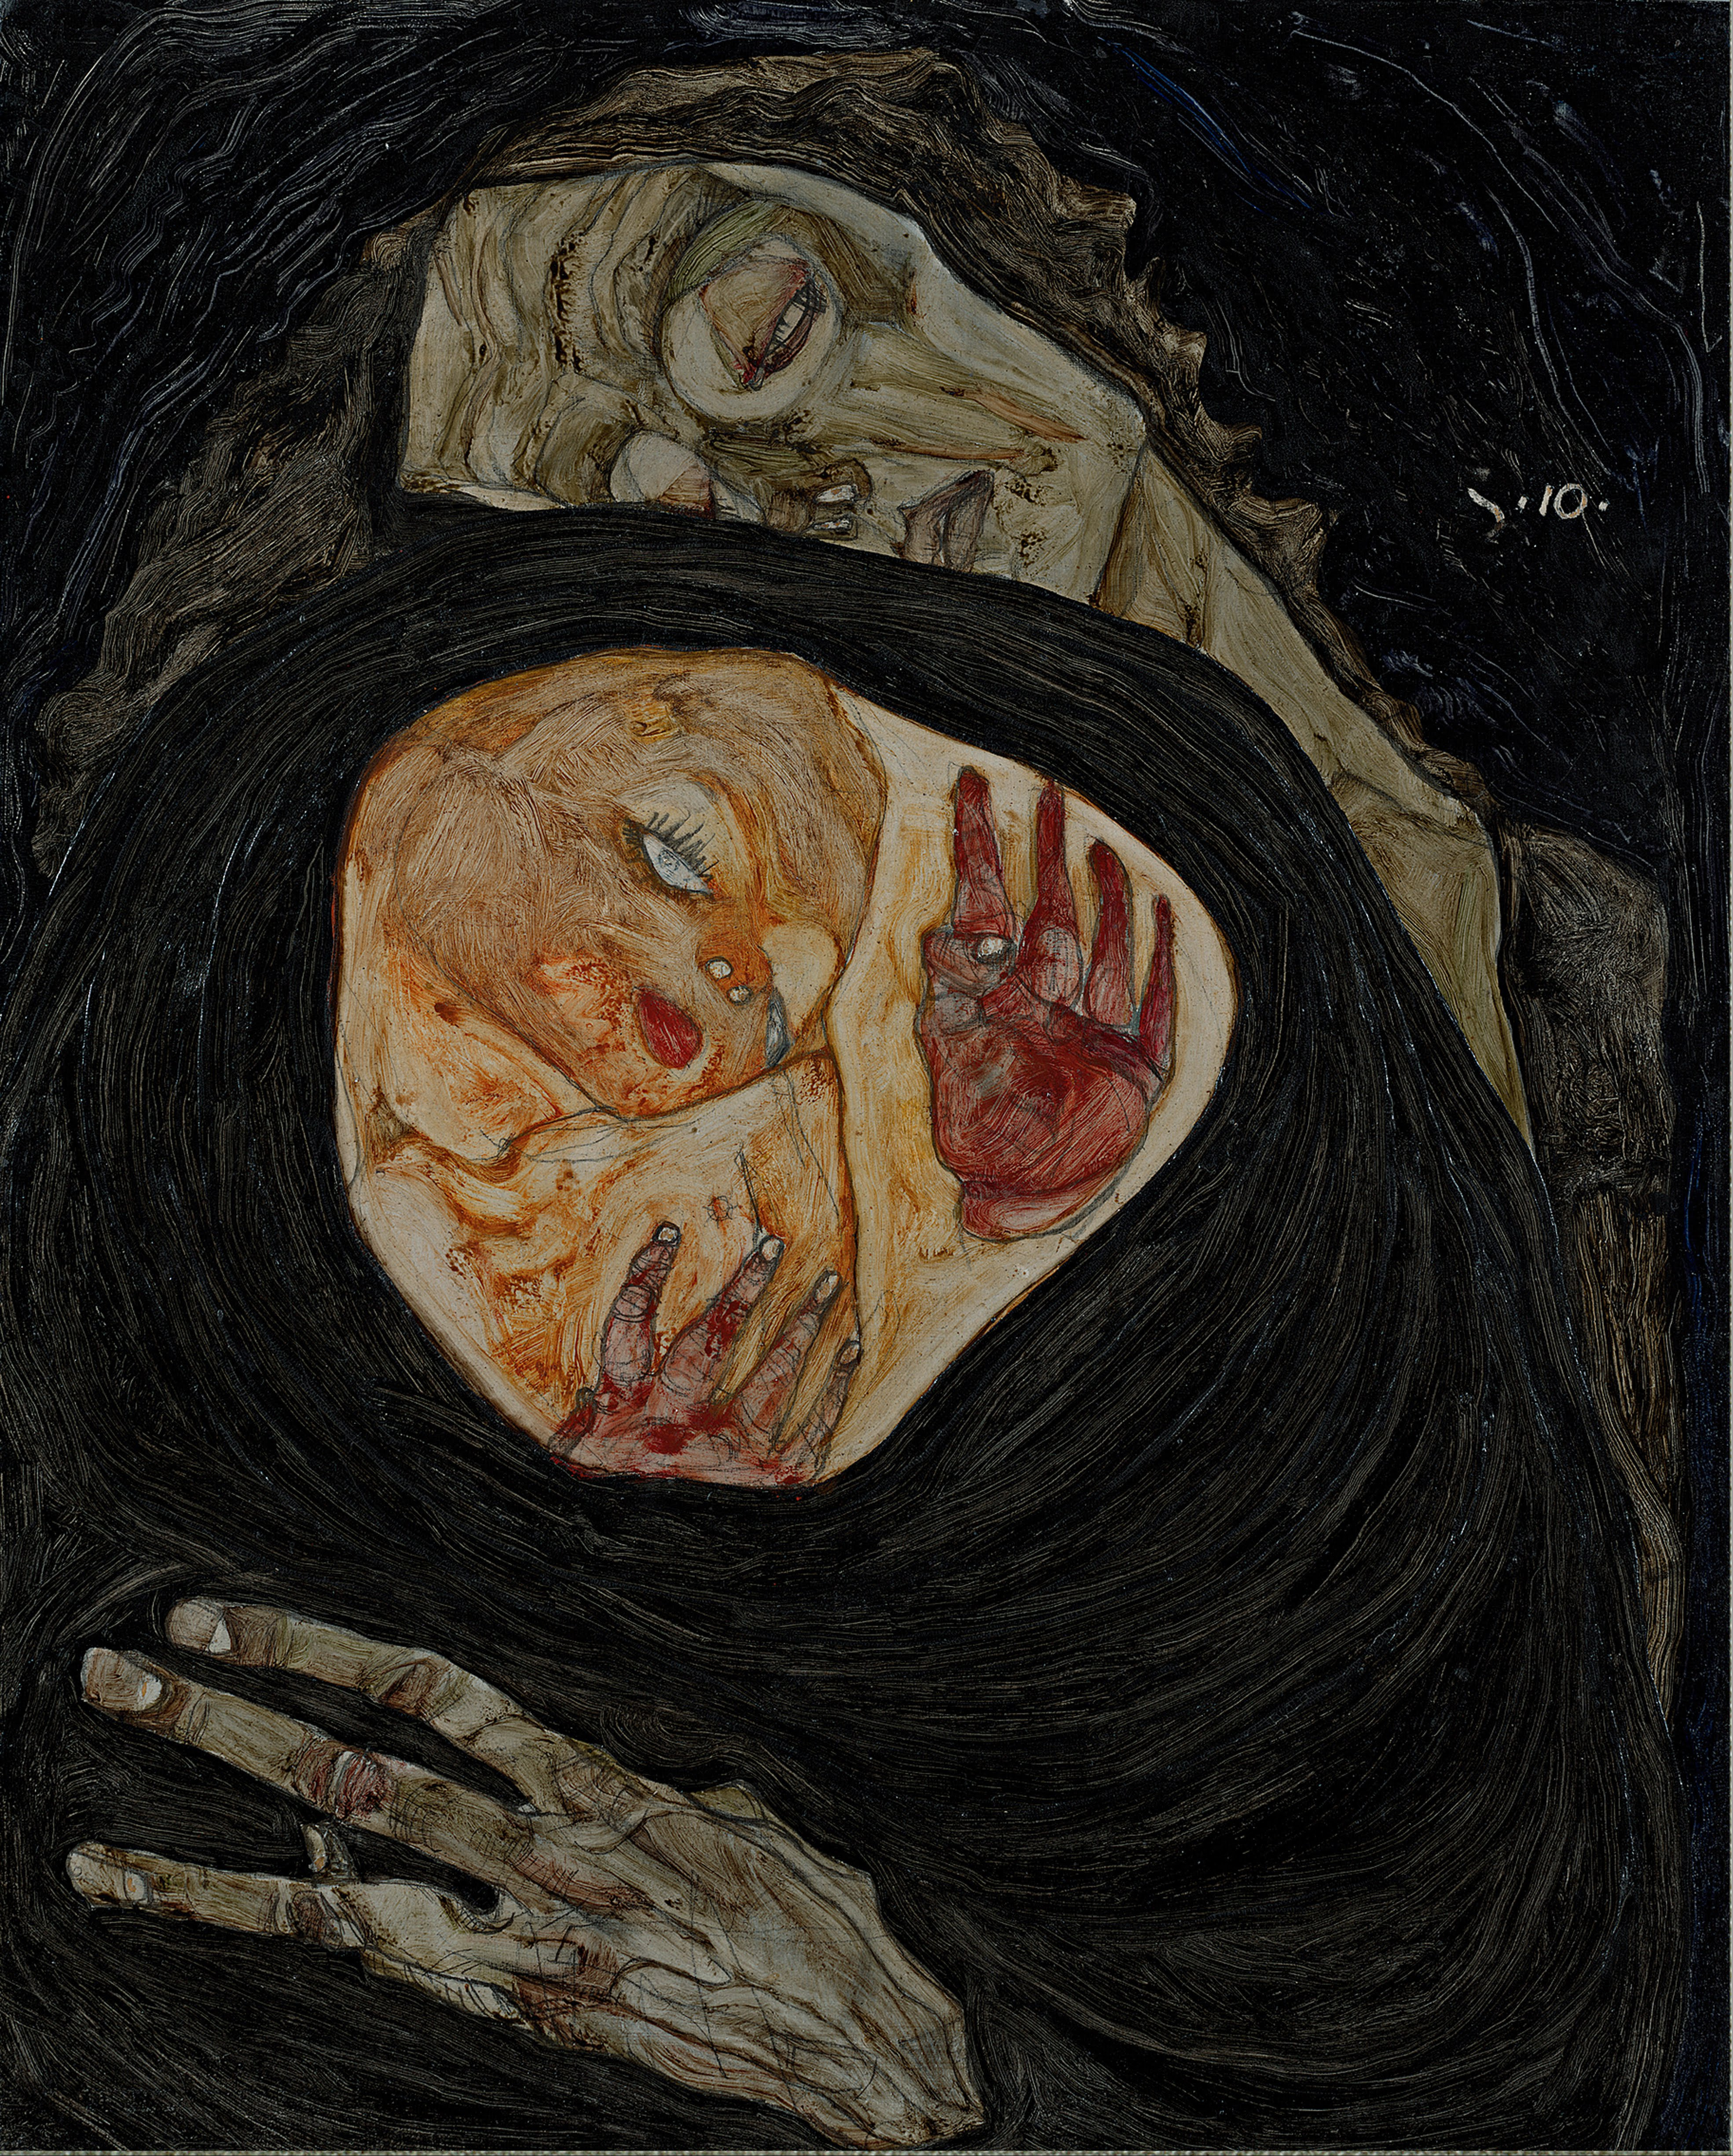 Mamă moartă by Egon Schiele - cca. 1910 - 32 x 25.7 cm 